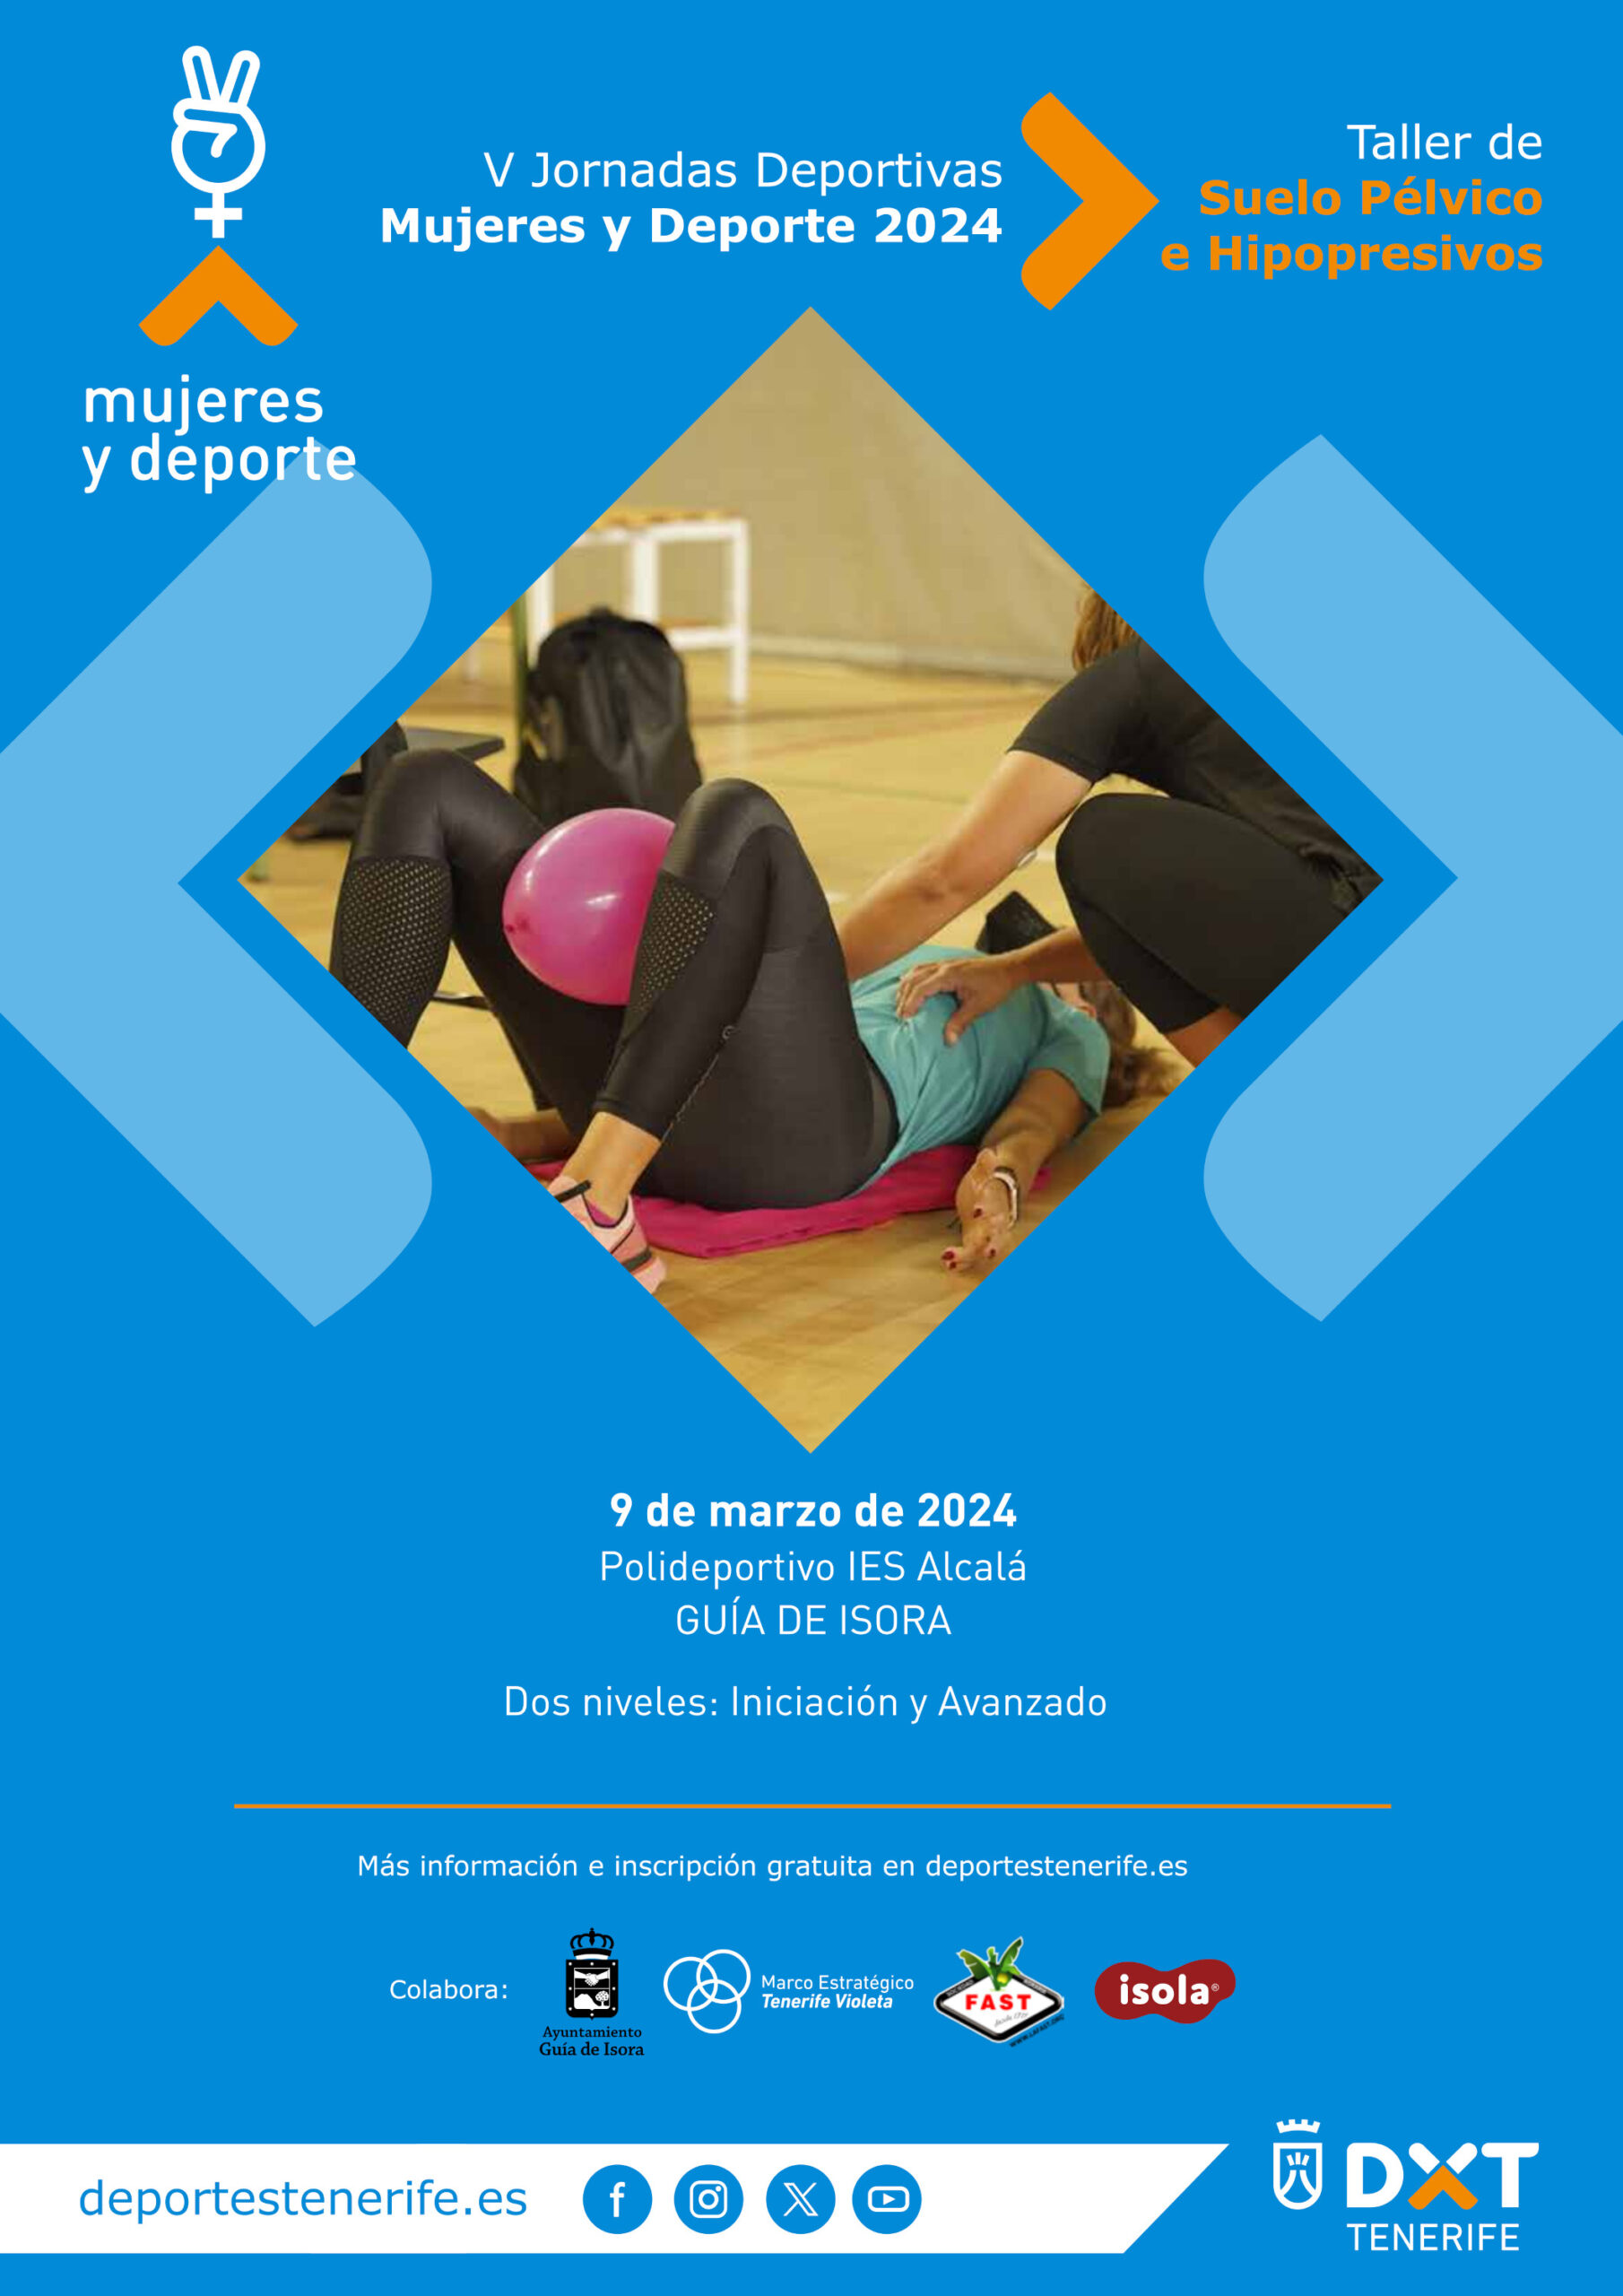 V Jornadas Deportivas Mujeres y Deporte 2024 - Taller de Suelo Pélvico e Hipopresivos